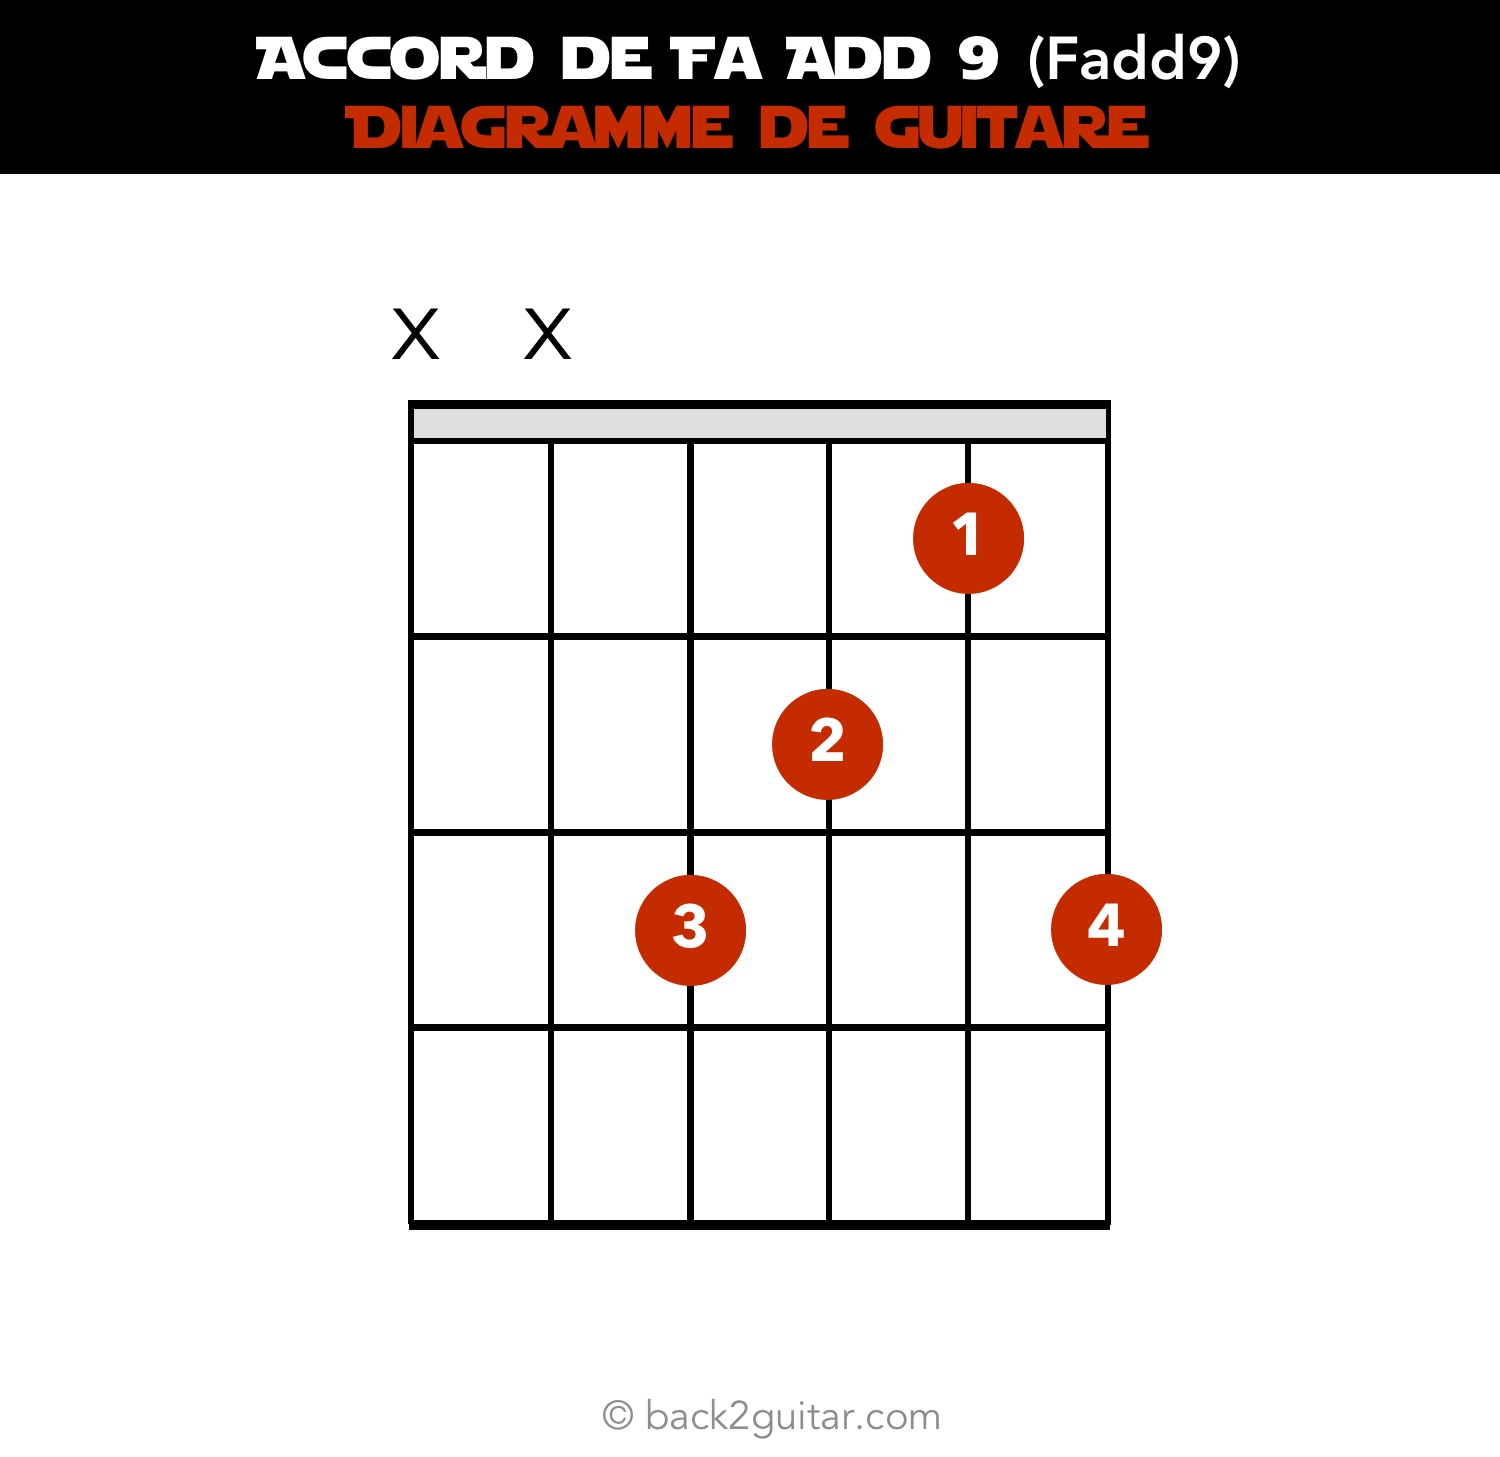 accord guitare fa add9 diagramme guitare (Fadd9)